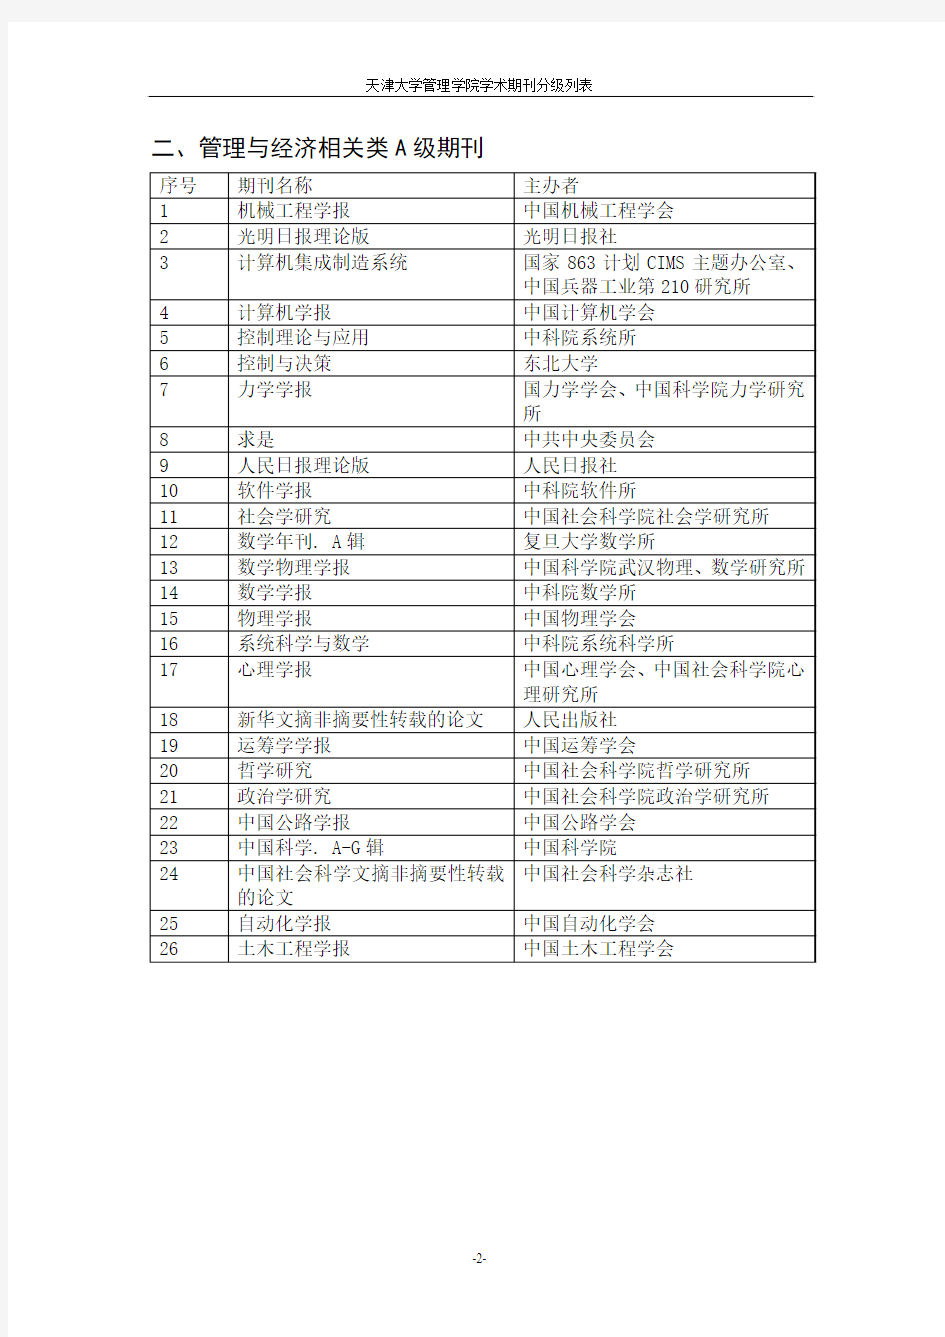 天津大学管理学院期刊分级列表(修改后)